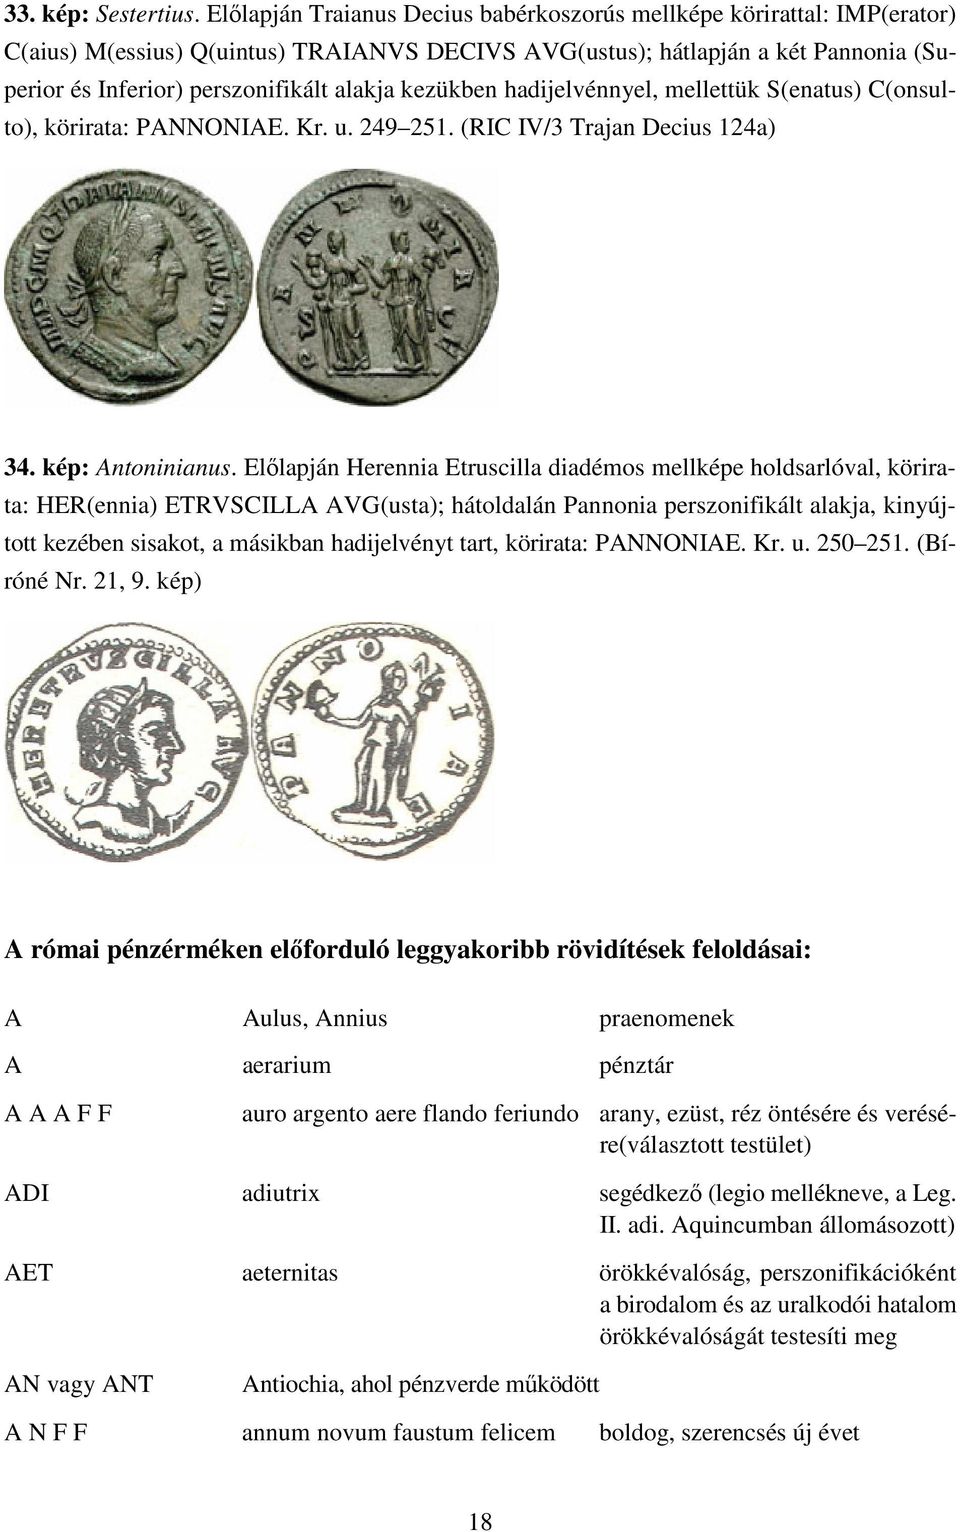 kezükben hadijelvénnyel, mellettük S(enatus) C(onsulto), körirata: PANNONIAE. Kr. u. 249 251. (RIC IV/3 Trajan Decius 124a) 34. kép: Antoninianus.